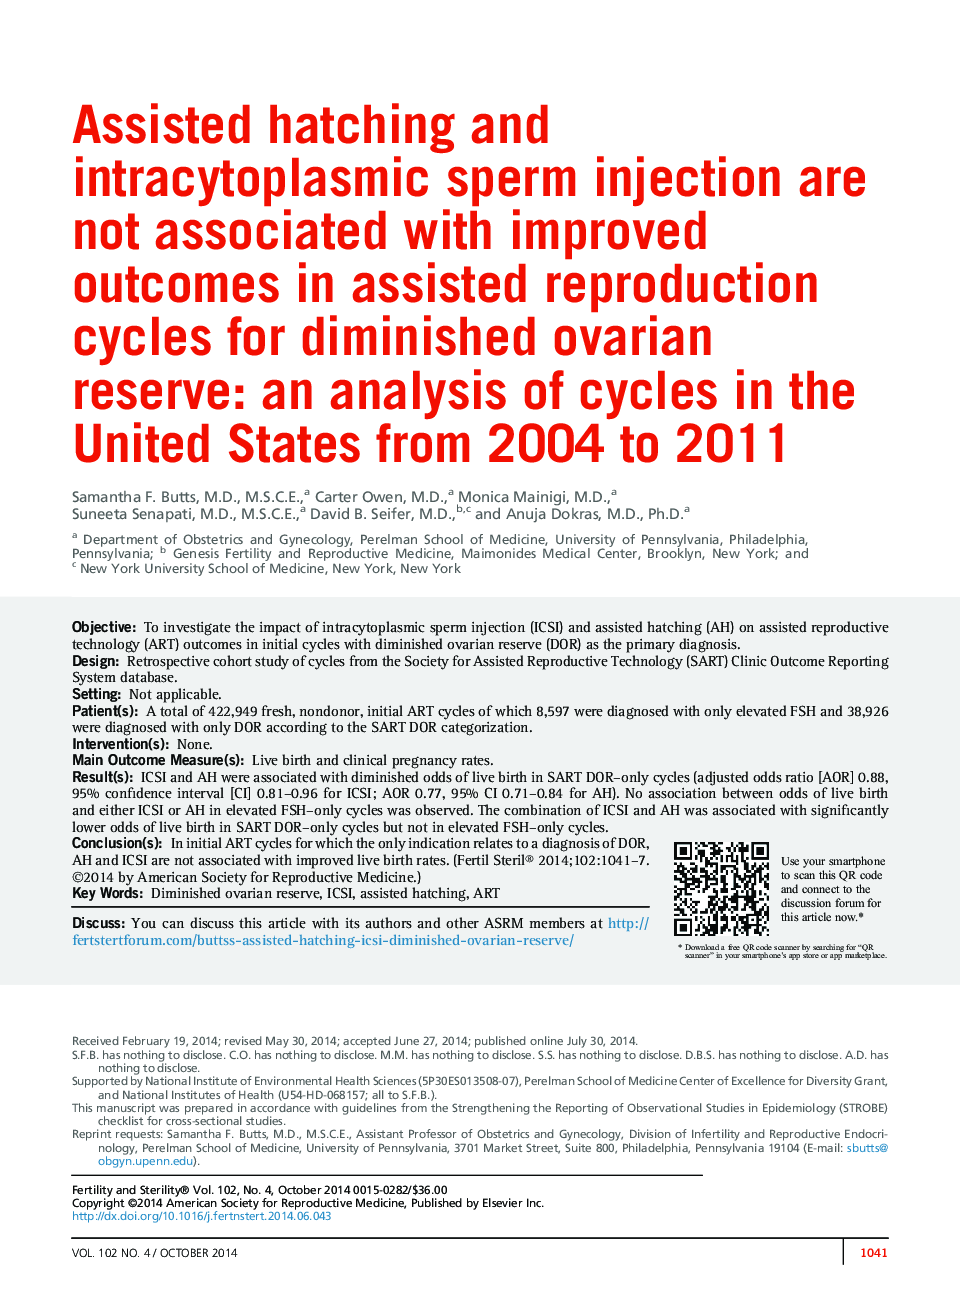 کمک هورمونی و تزریق اسپرم داخل سیتوپلاسمی با نتایج بهبود یافته در دوره های کمک تولید مثل برای کاهش تخفیف تخمدان همراه نیست: تجزیه و تحلیل چرخه در ایالات متحده از 2004 تا 2011 